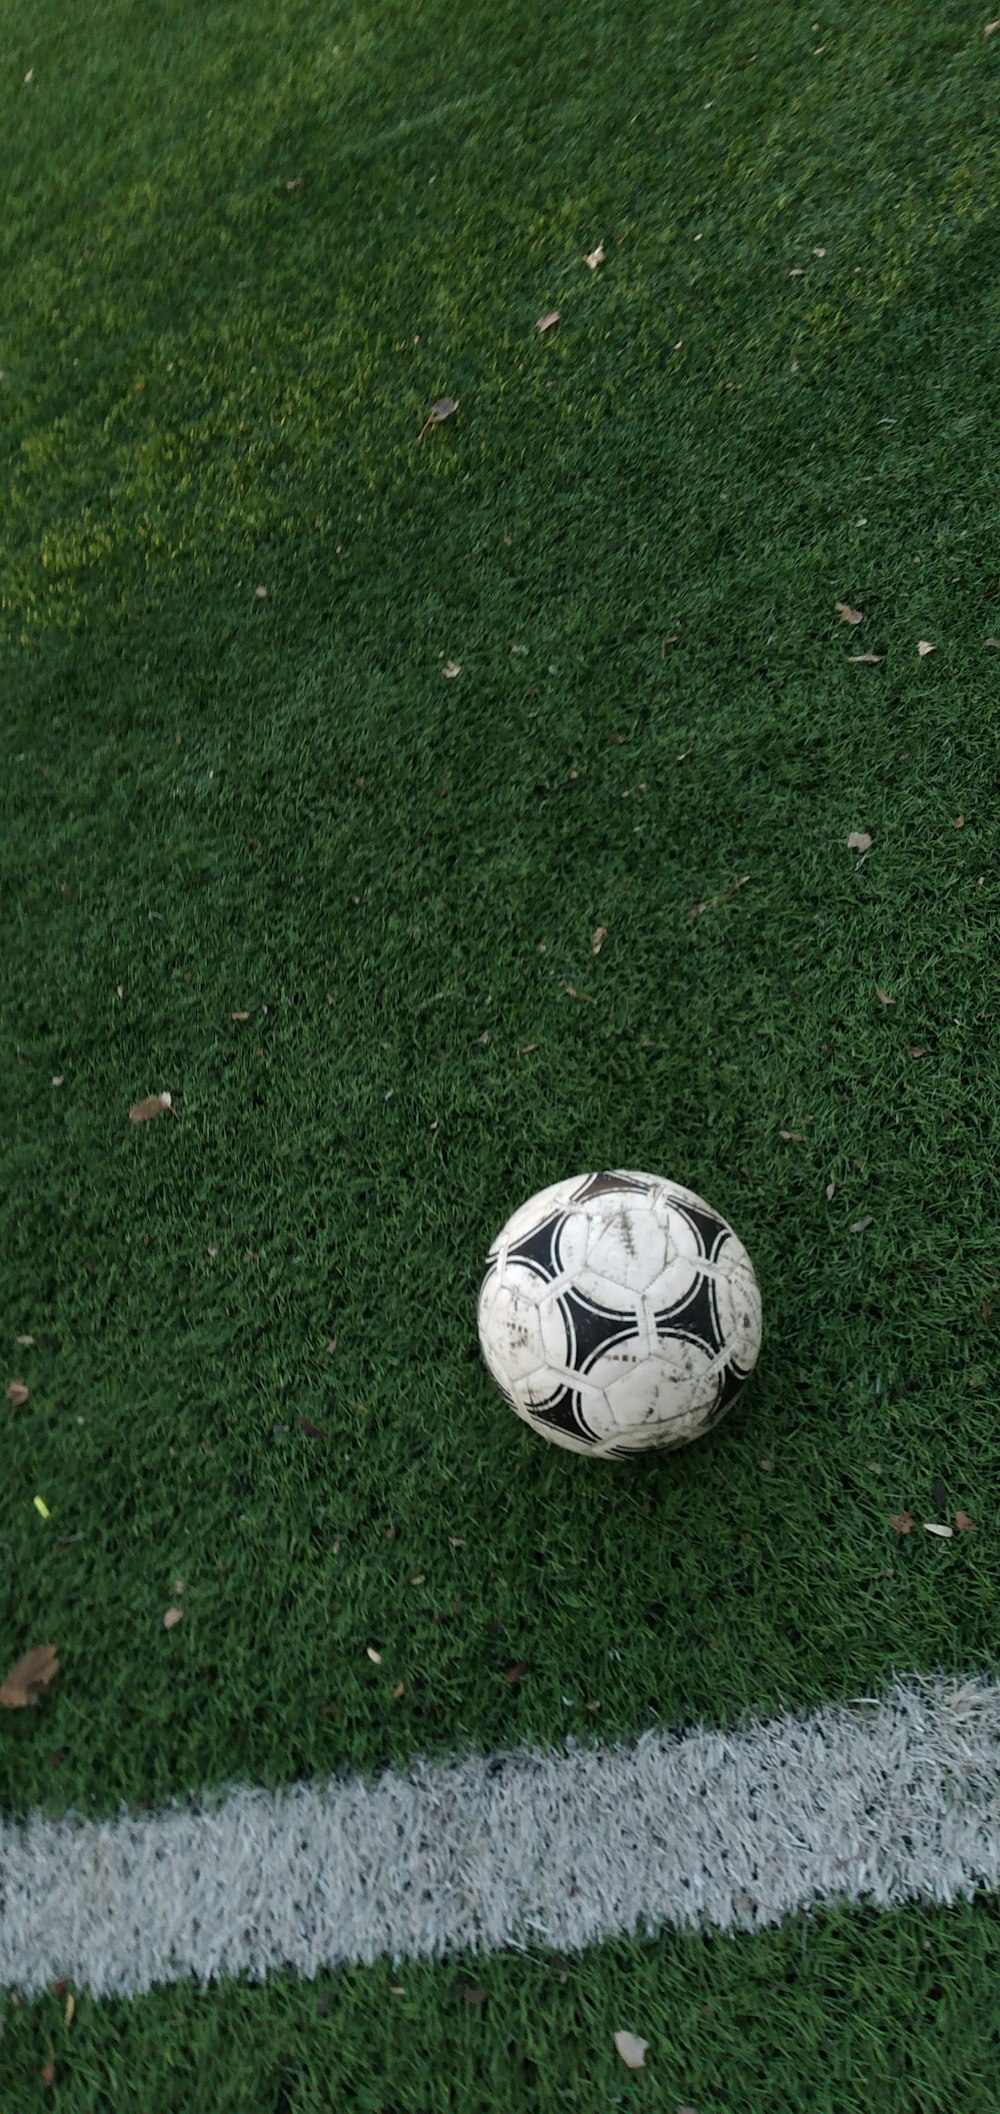 bola de futebol branca e preta na grama